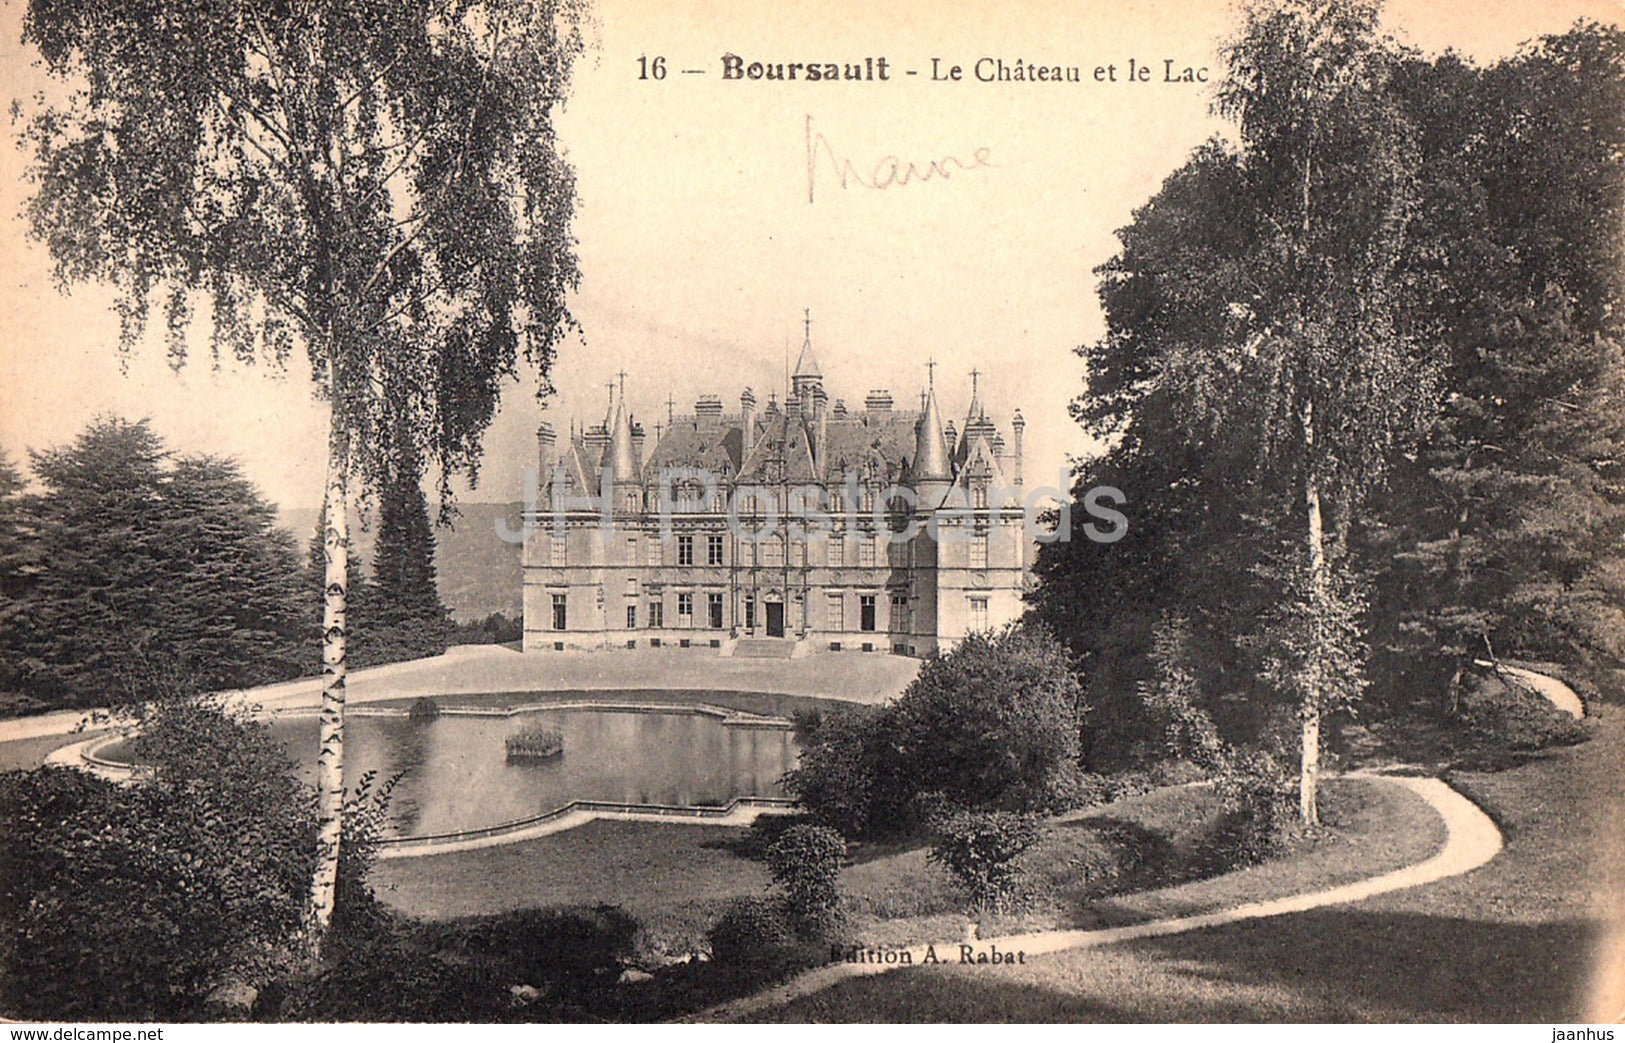 Boursault - Le Chateau et le Lac - castle - 16 - old postcard - France - unused - JH Postcards